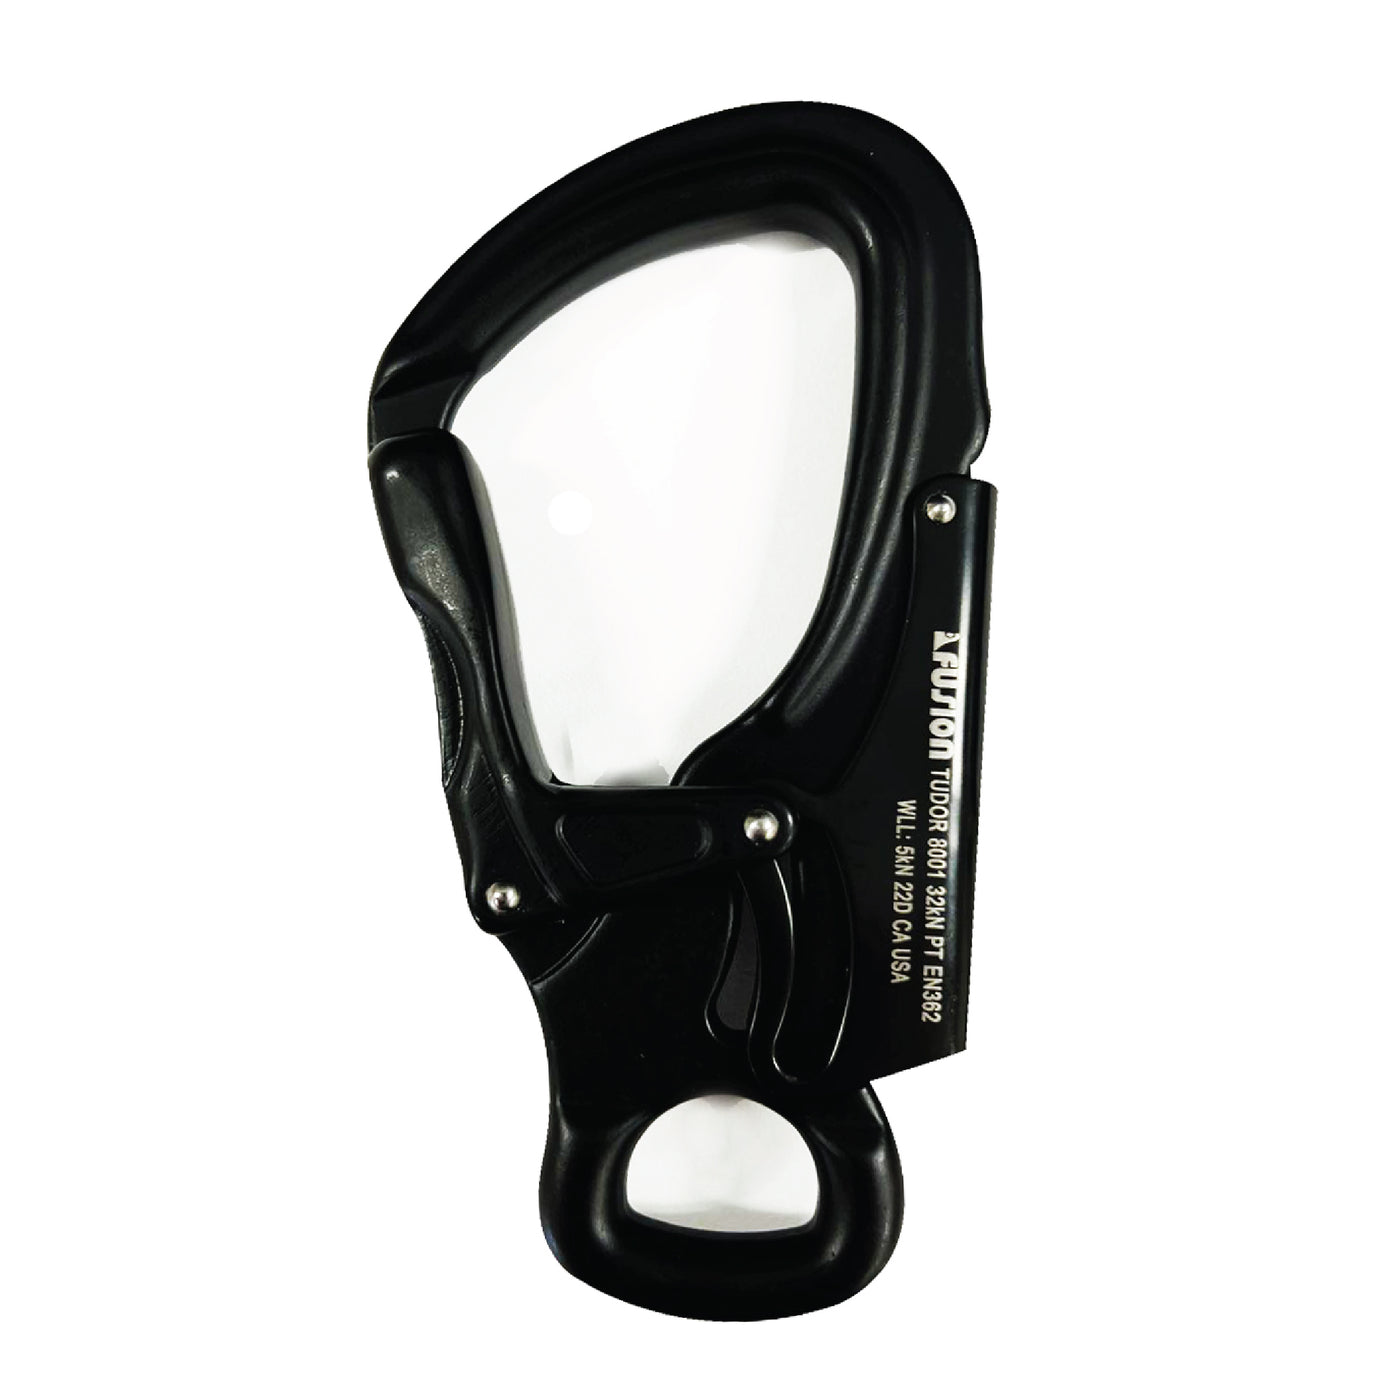 Tudor Flat Loop Aluminum Snap Hook Carabiner - Black